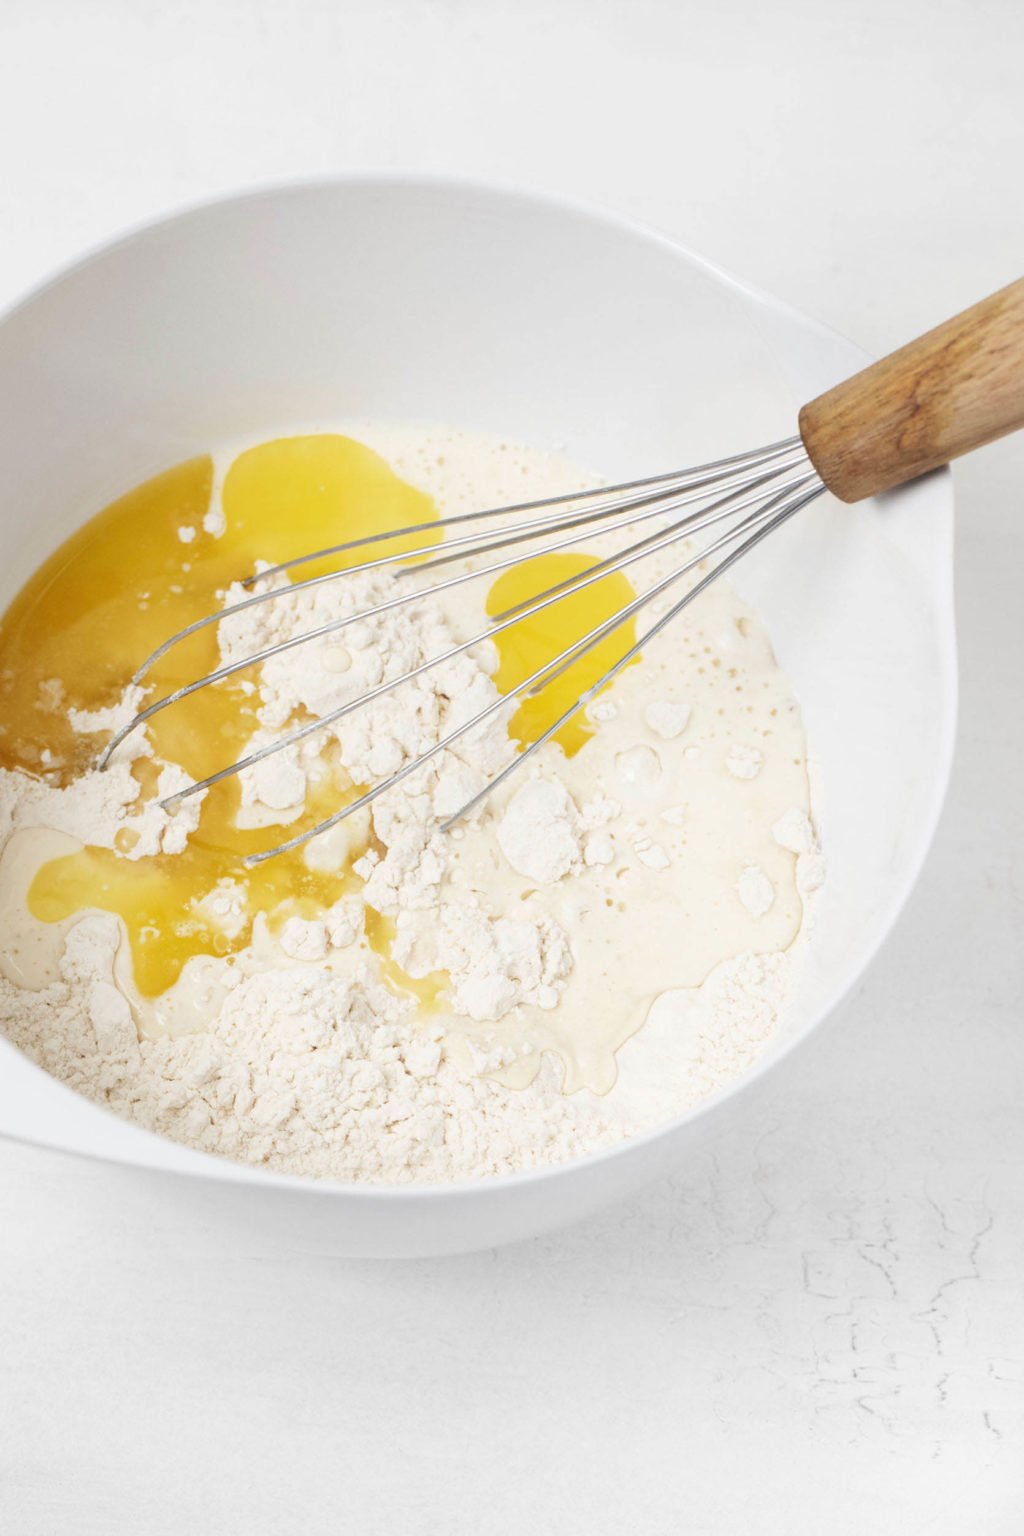 Le bol mélangeur contient de la farine, du beurre fondu et un fouet.